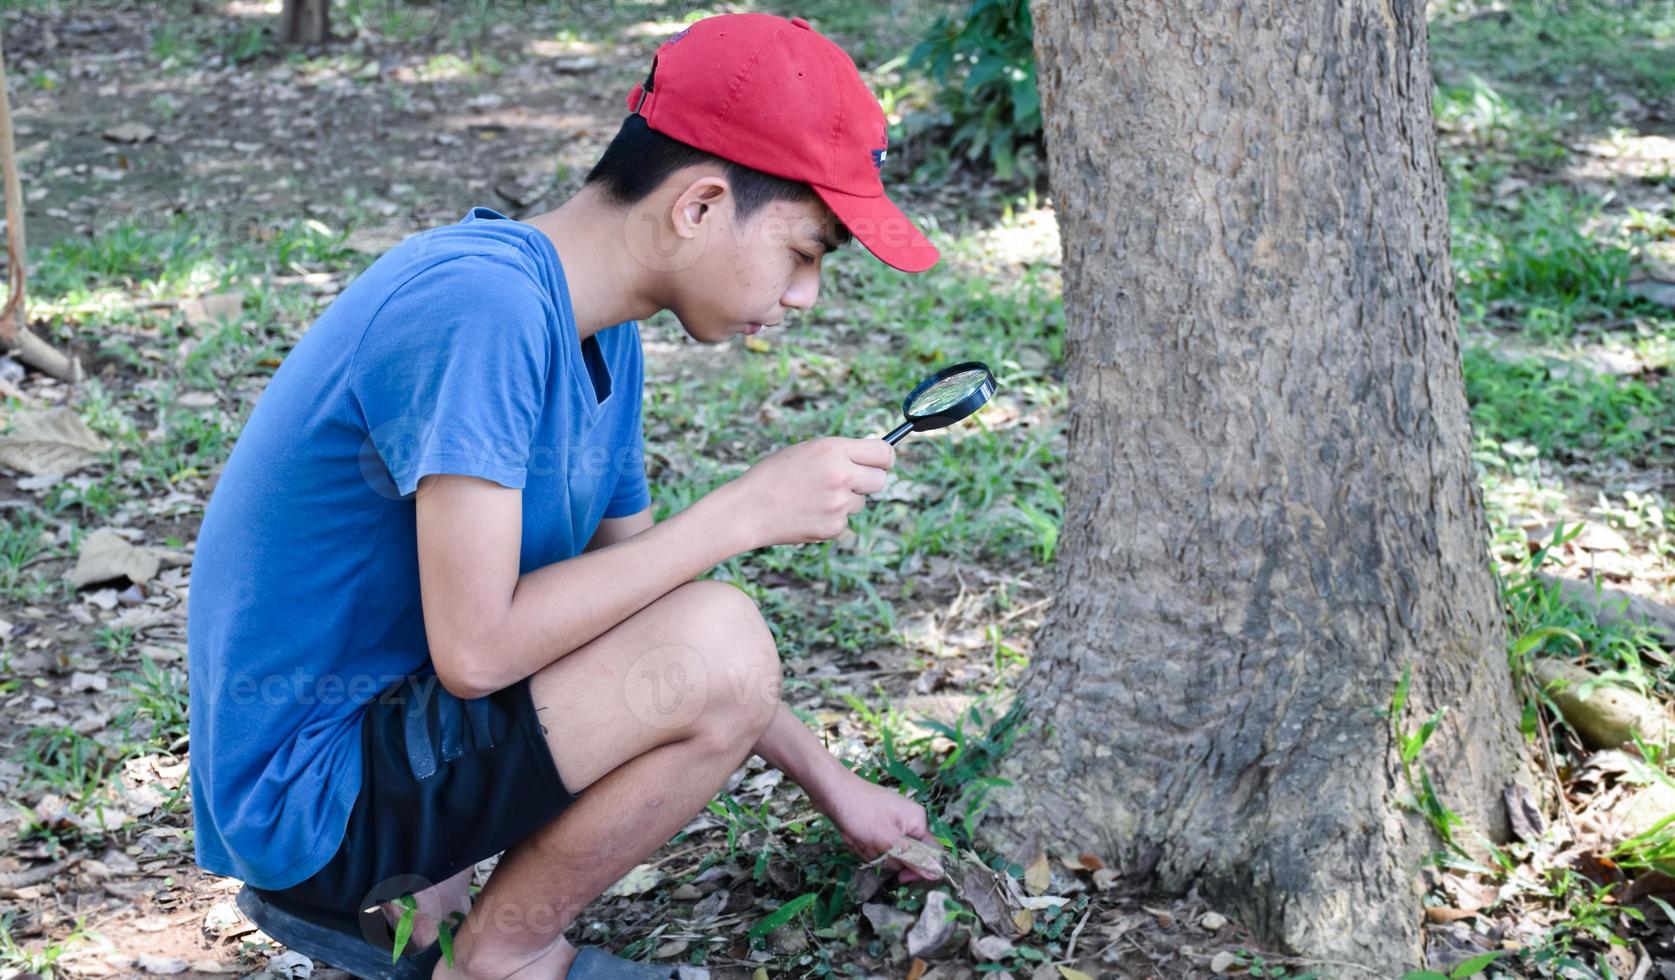 los niños asiáticos están leyendo los detalles de los pájaros y van a usar binoculares para observar pájaros en los árboles durante el campamento de verano, una idea para aprender criaturas y animales salvajes fuera del aula. foto